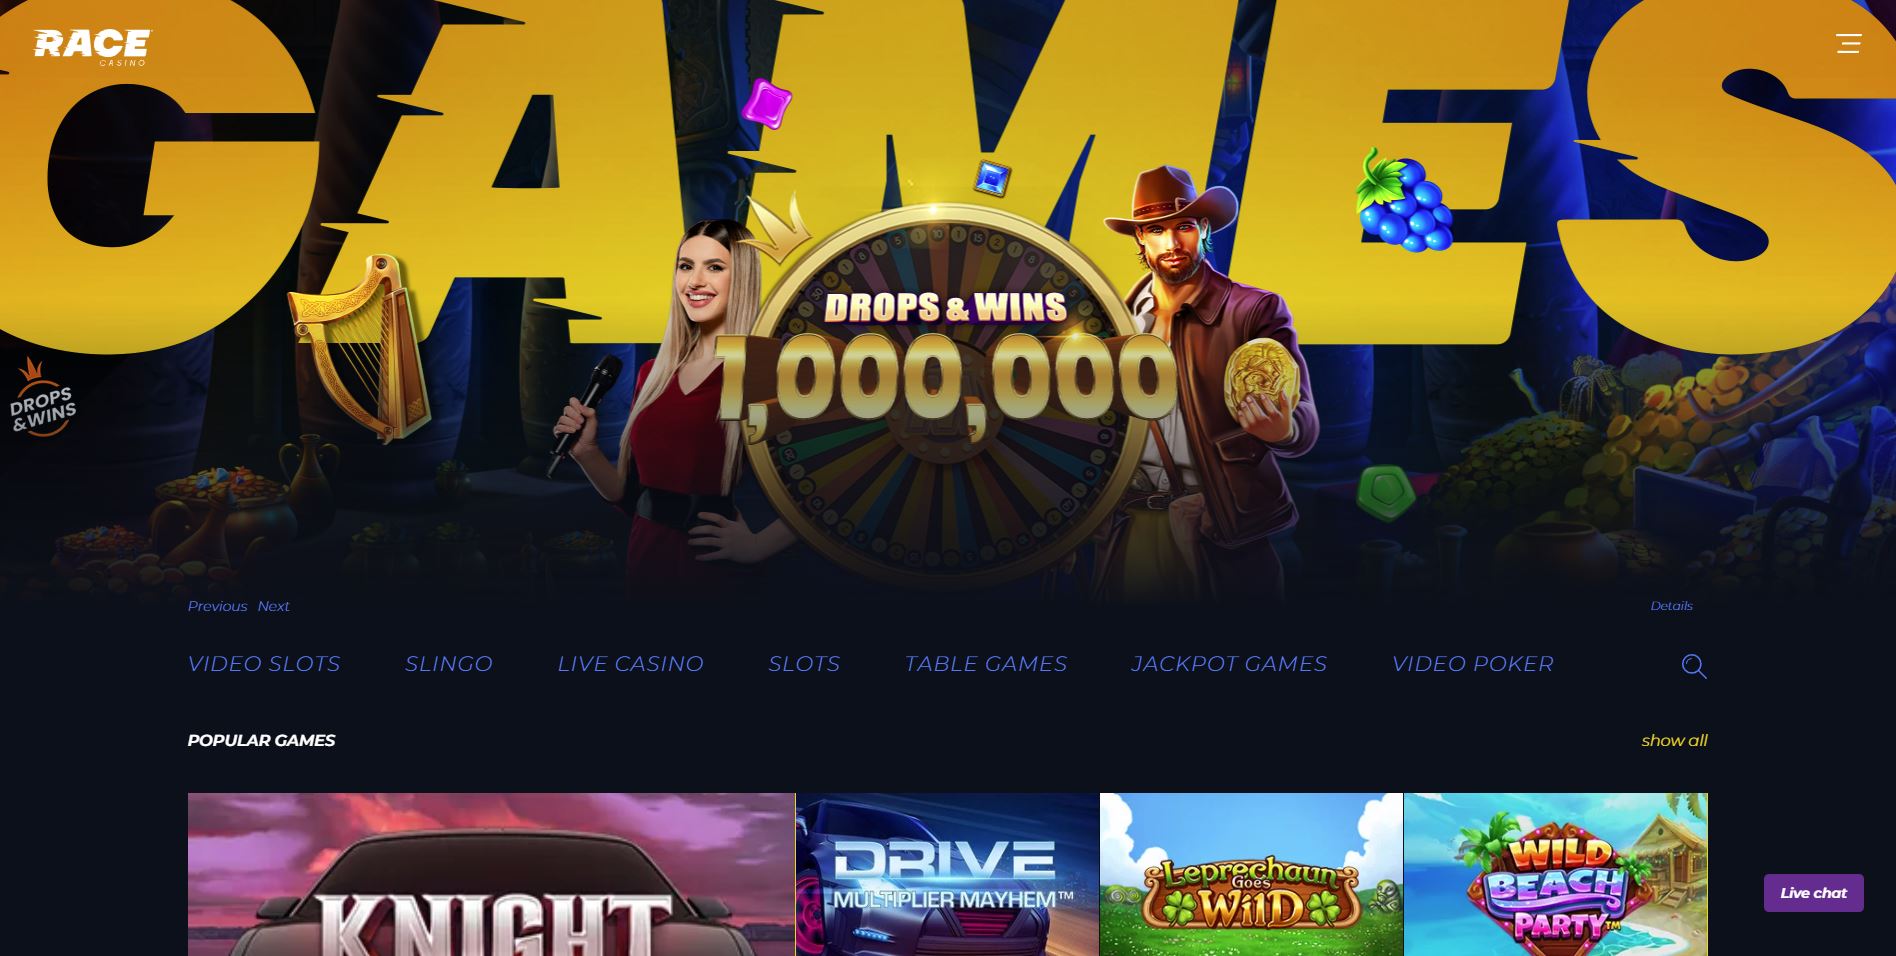 Race Casino homepage